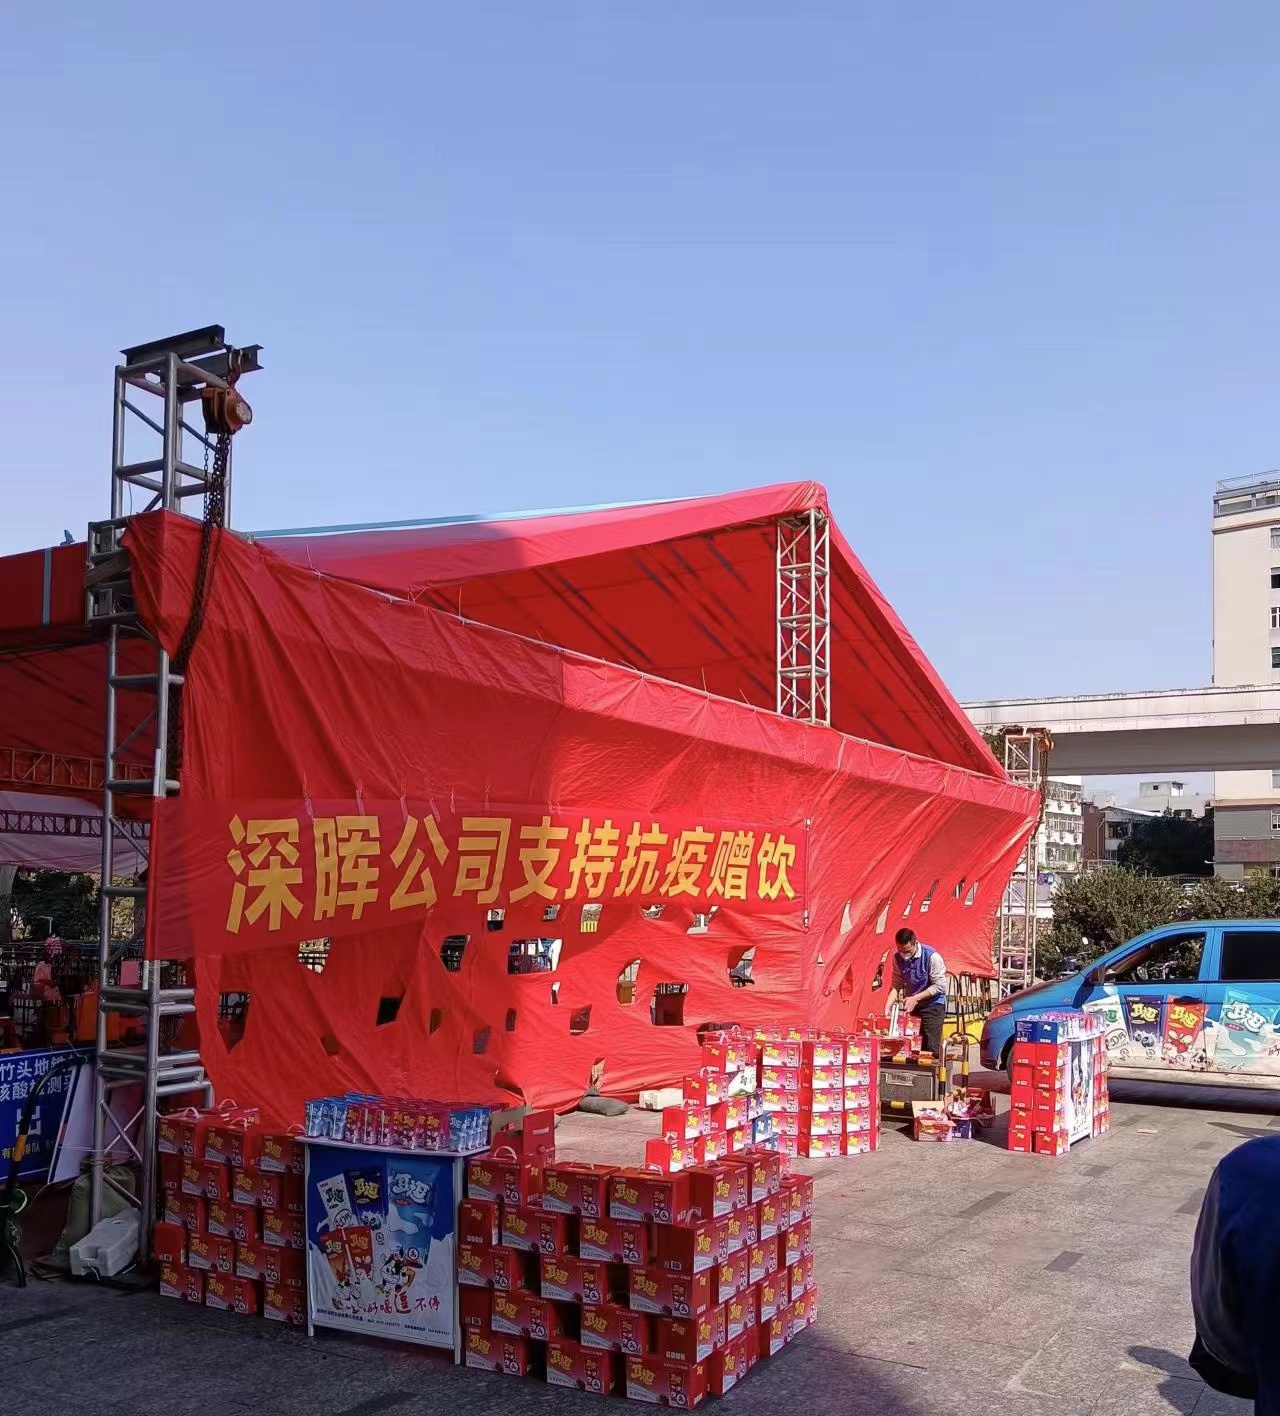 中国大发官网平台“支持抗疫赠饮”活动